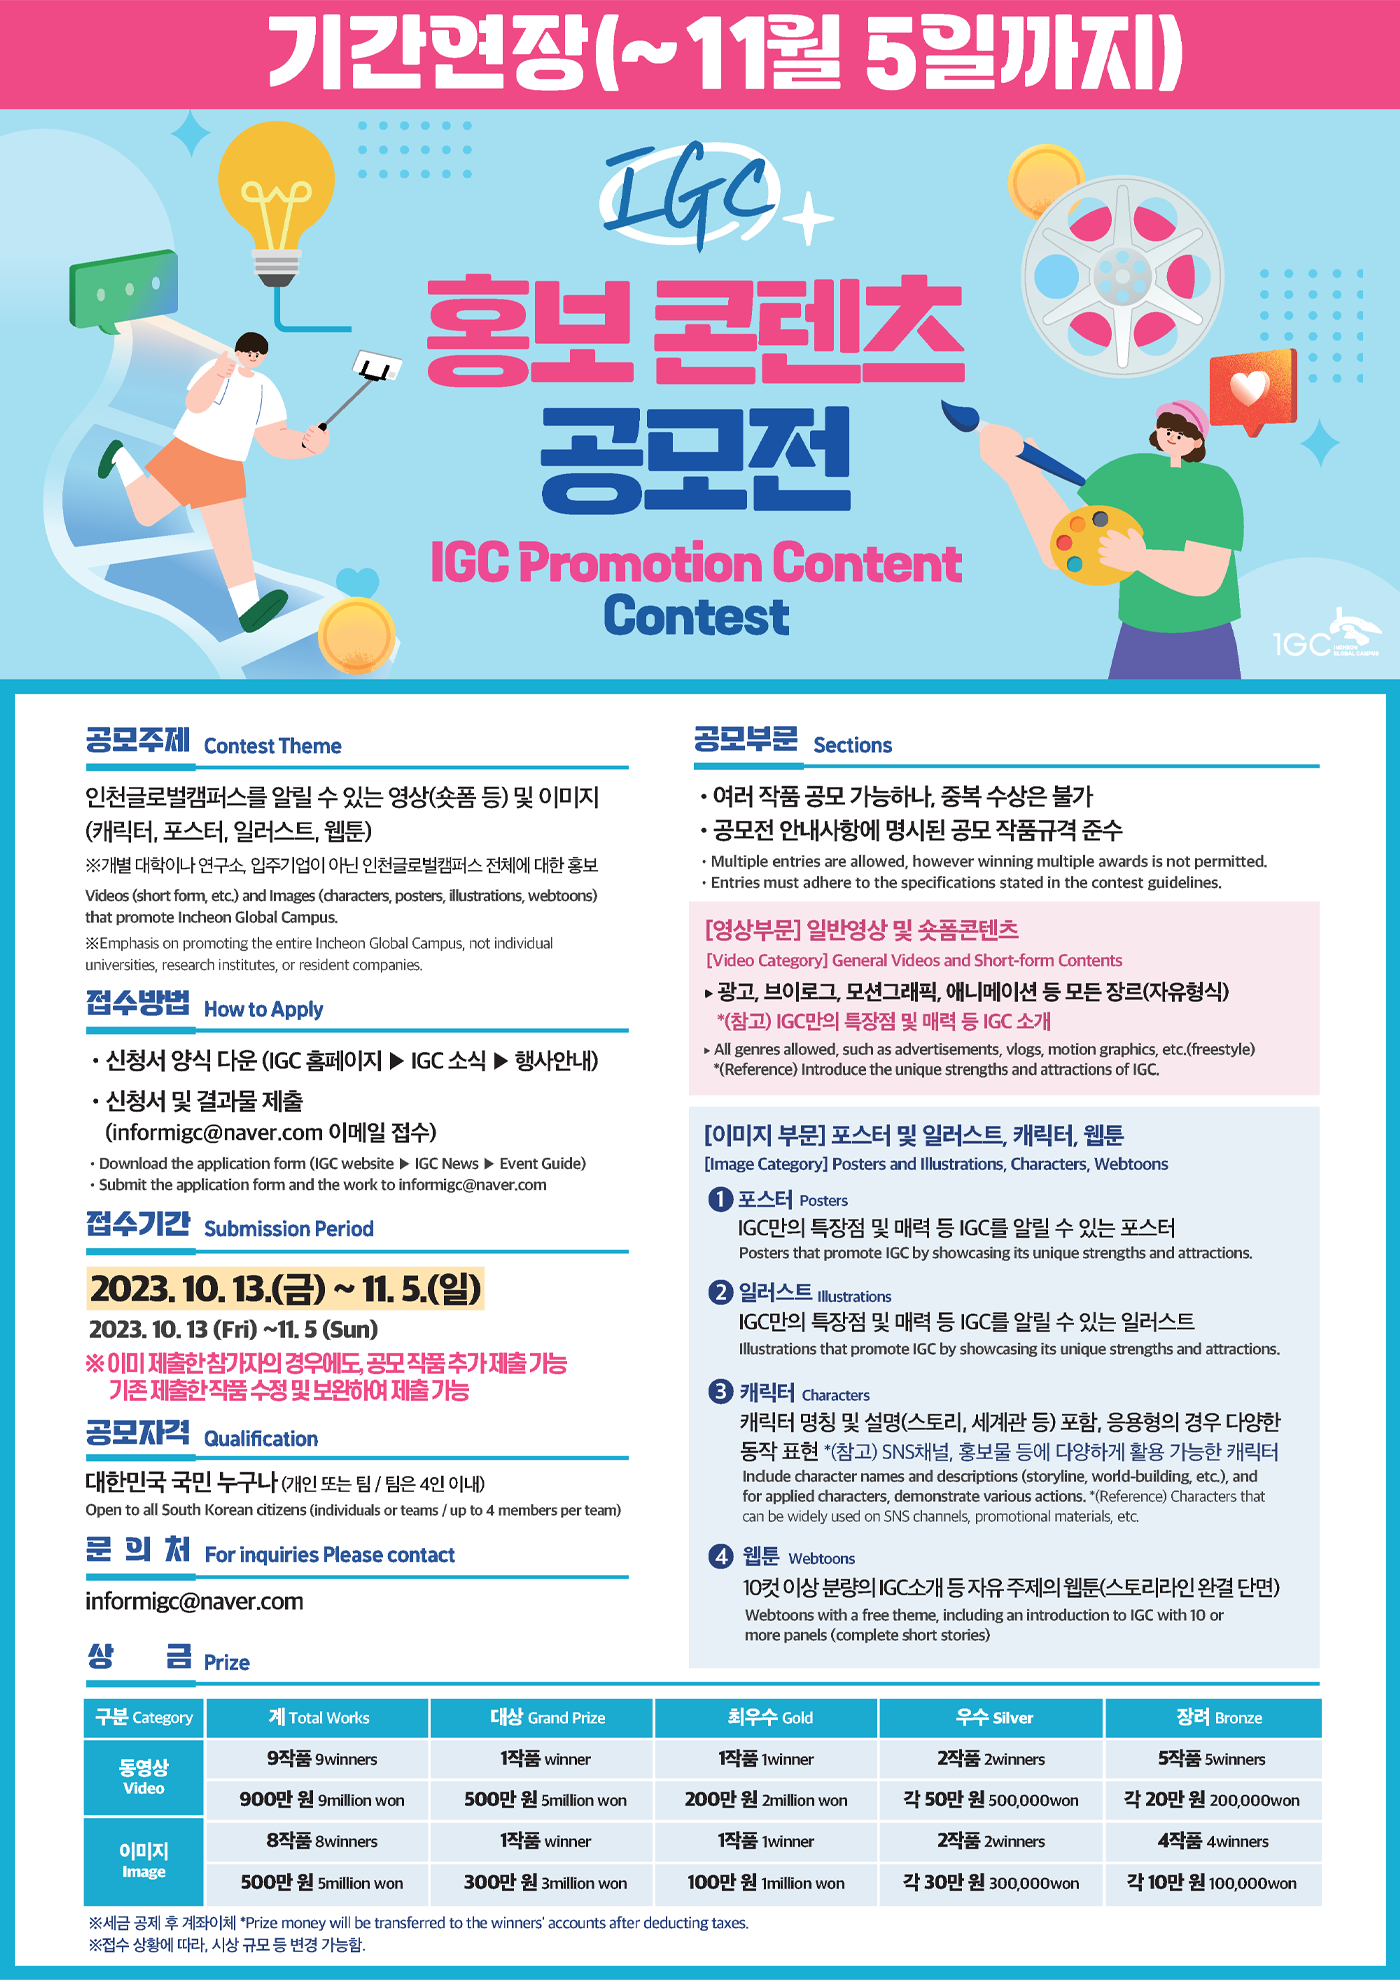 2023 IGC 홍보 콘텐츠 공모전 포스터